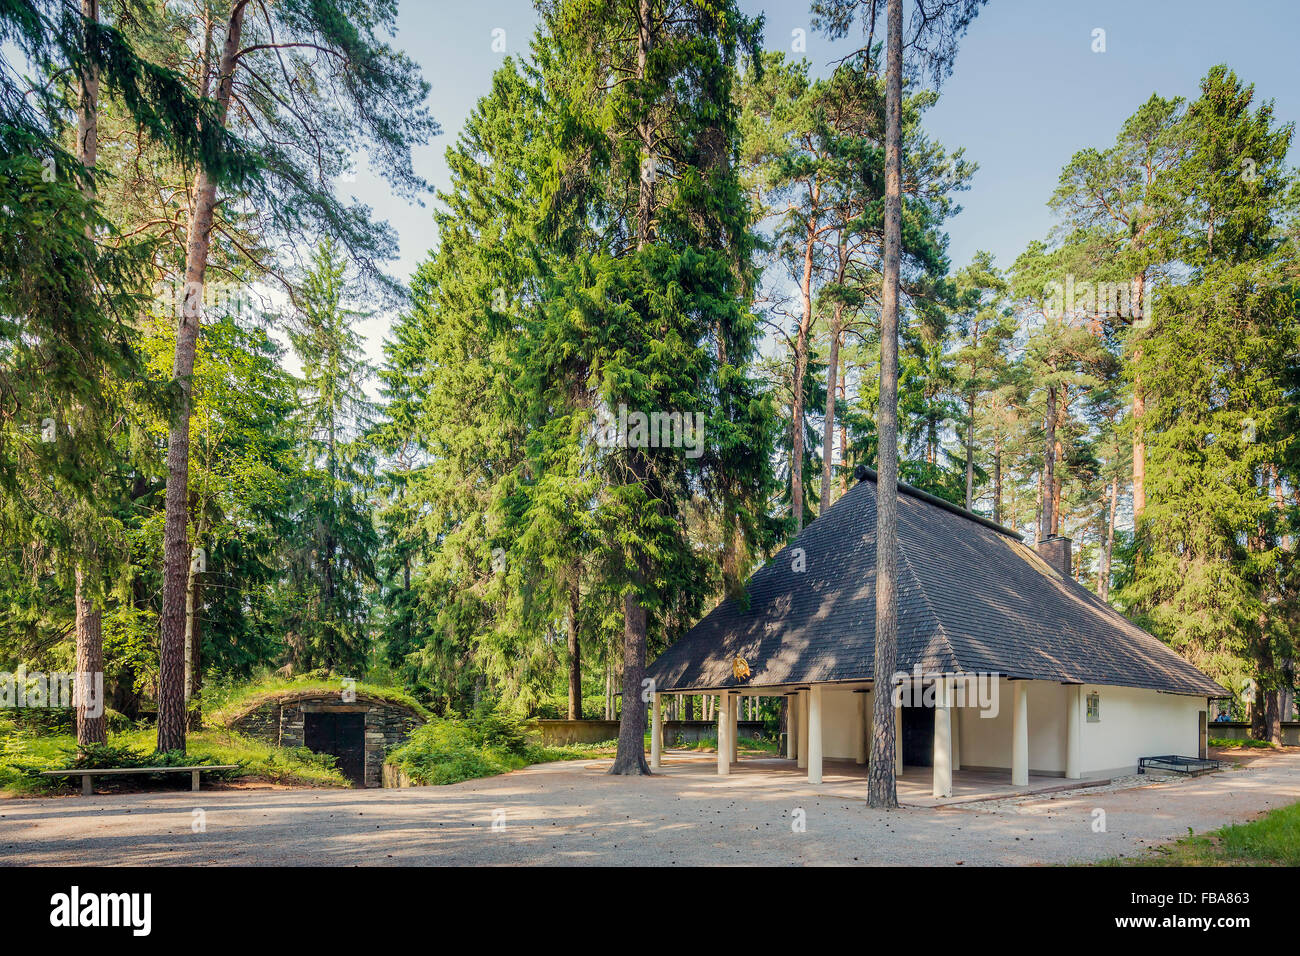 Suecia, Estocolmo Sodermanland, Gamla Enskede, Skogskyrkogarden, Casa entre árboles verdes bajo el cielo claro Foto de stock